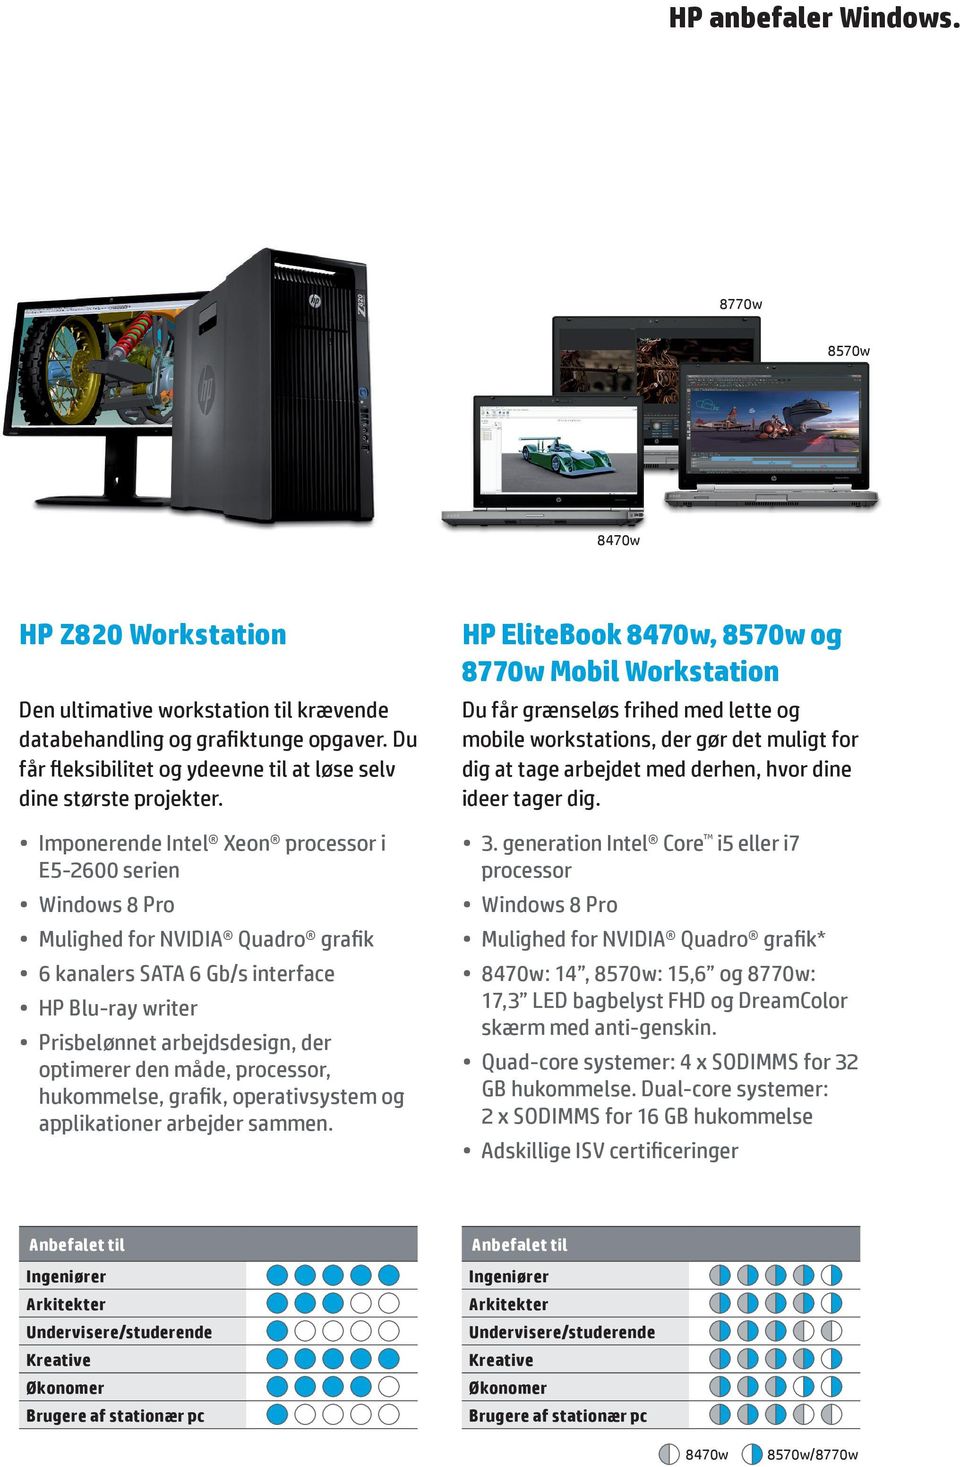 Imponerende Intel Xeon processor i E5-2600 serien Mulighed for NVIDIA Quadro grafik 6 kanalers SATA 6 Gb/s interface HP Blu-ray writer Prisbelønnet arbejdsdesign, der optimerer den måde, processor,